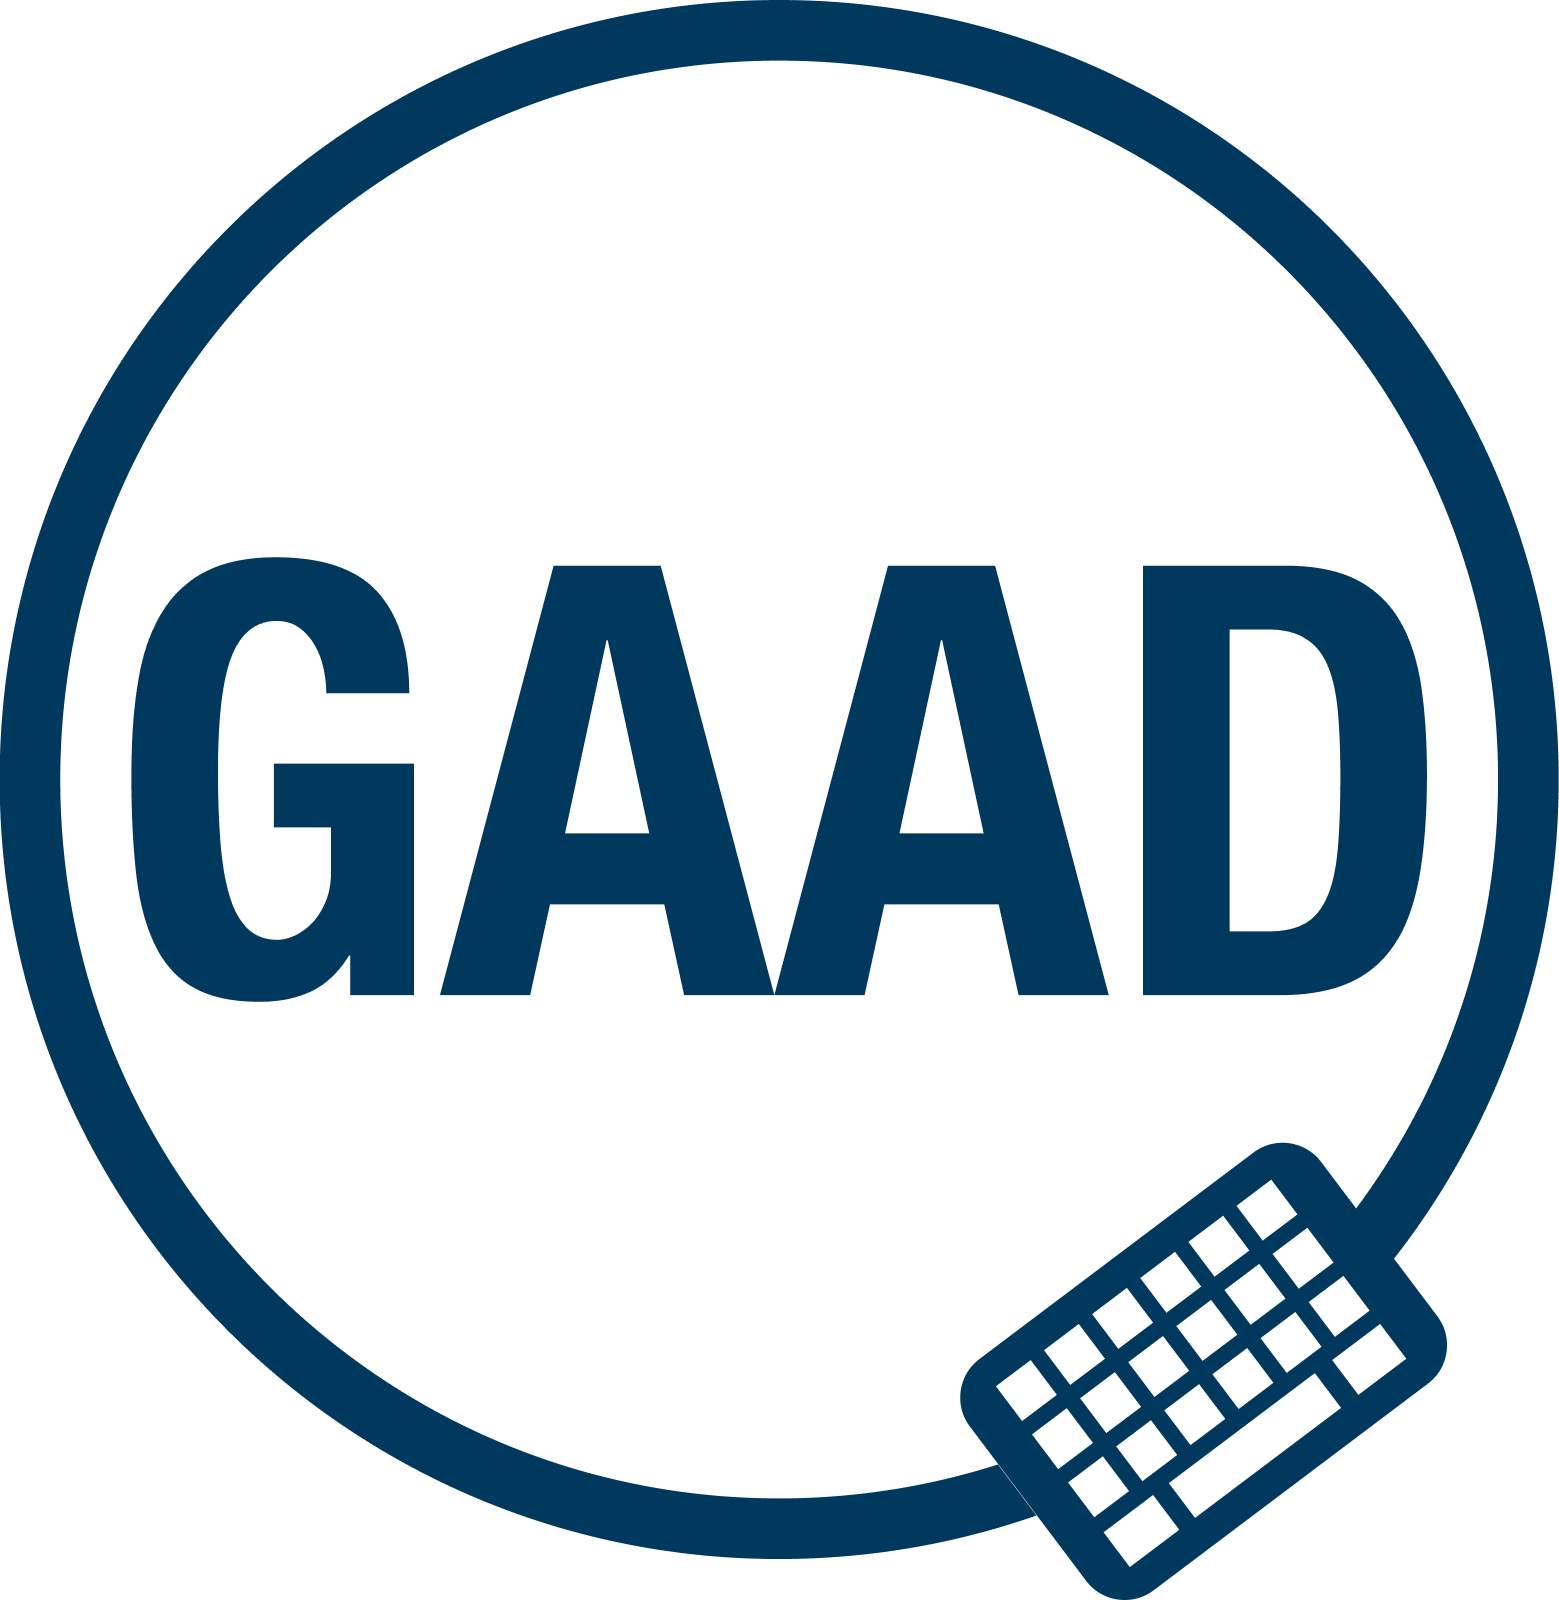 GAAD logo